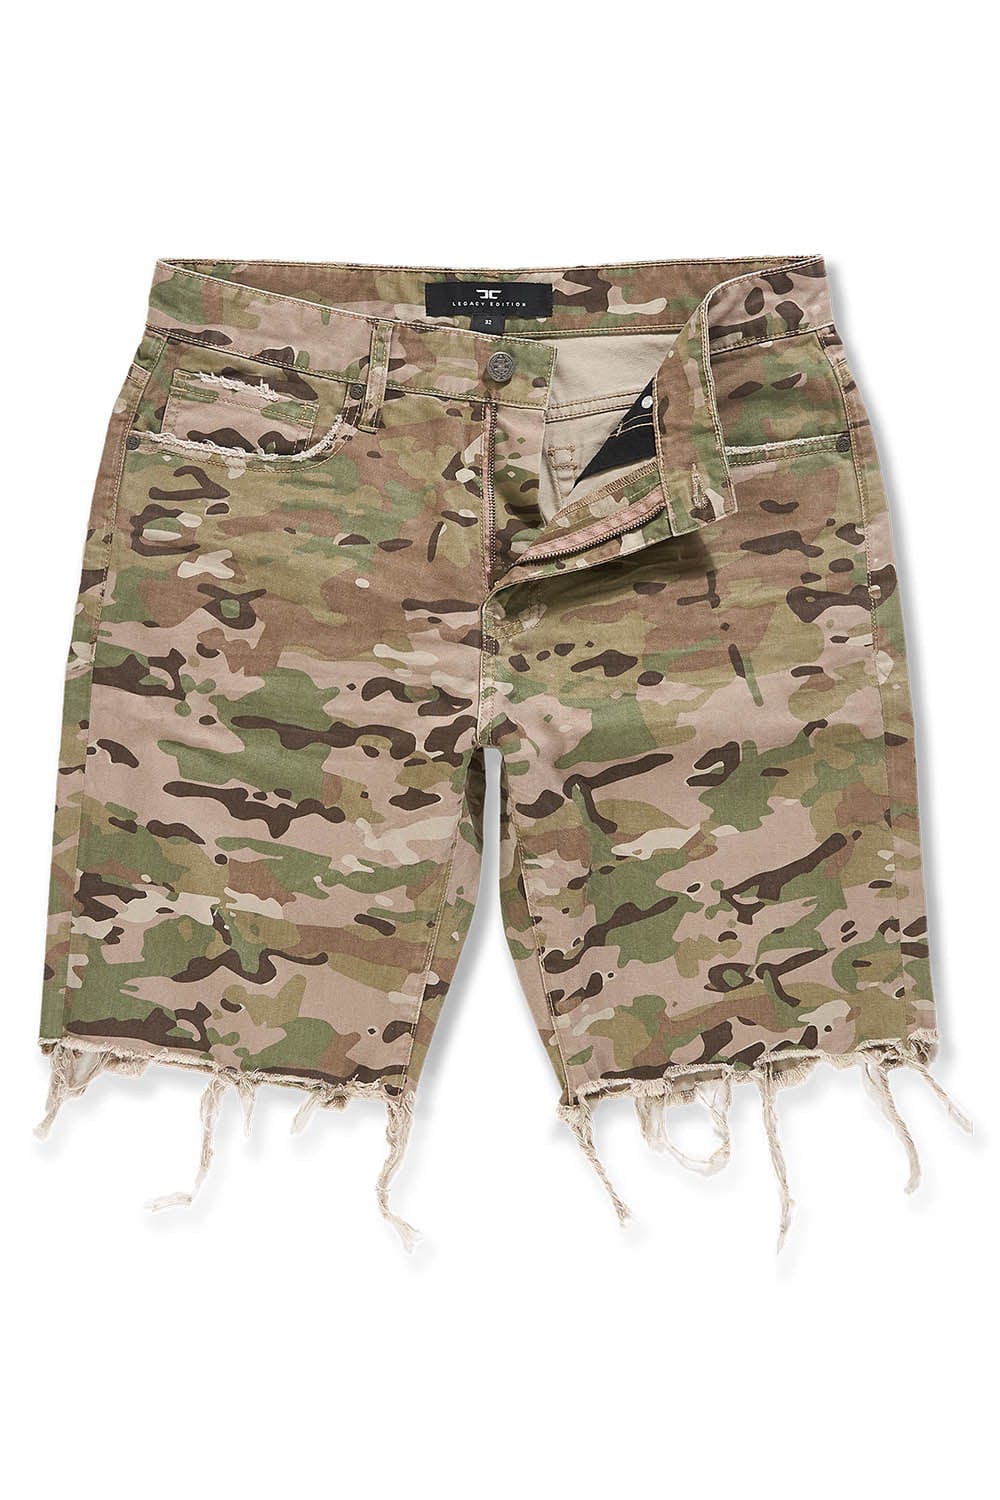 Retro - Infantry Twill Shorts (Camo 2.0)